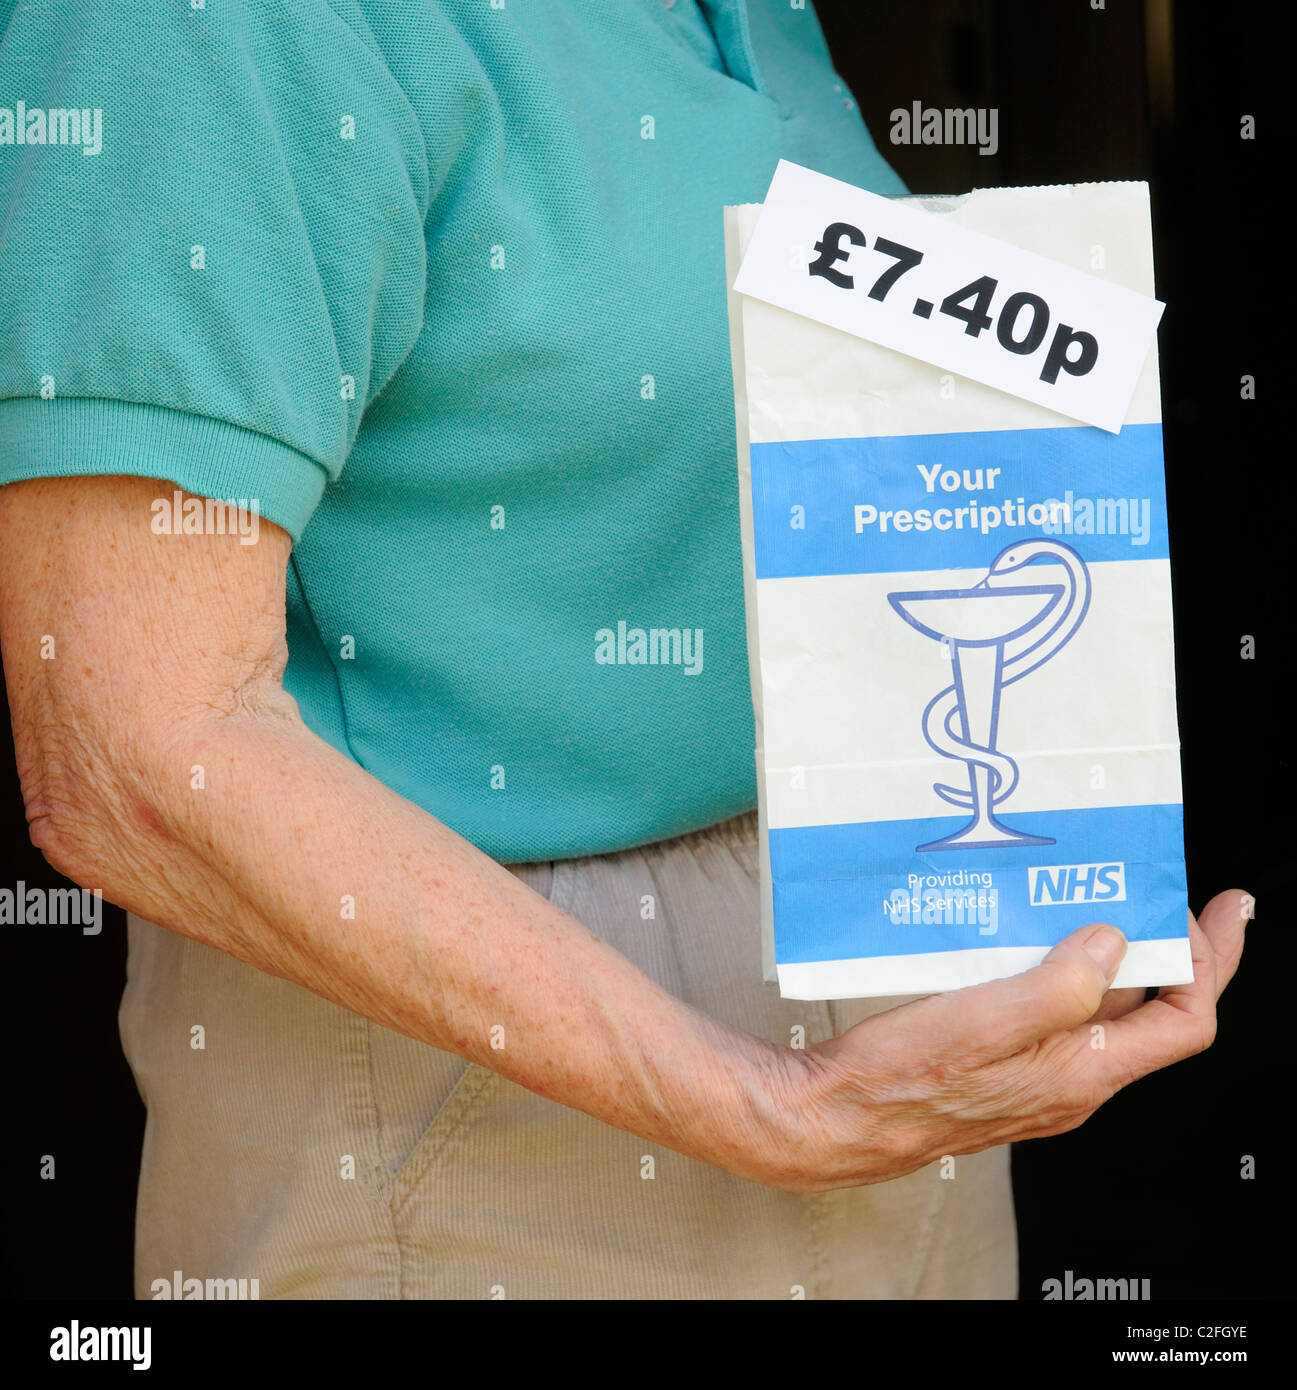 Paciente mujer sosteniendo NHS paquete de prescripción que tiene un cargo de £7.40p por tema Foto de stock